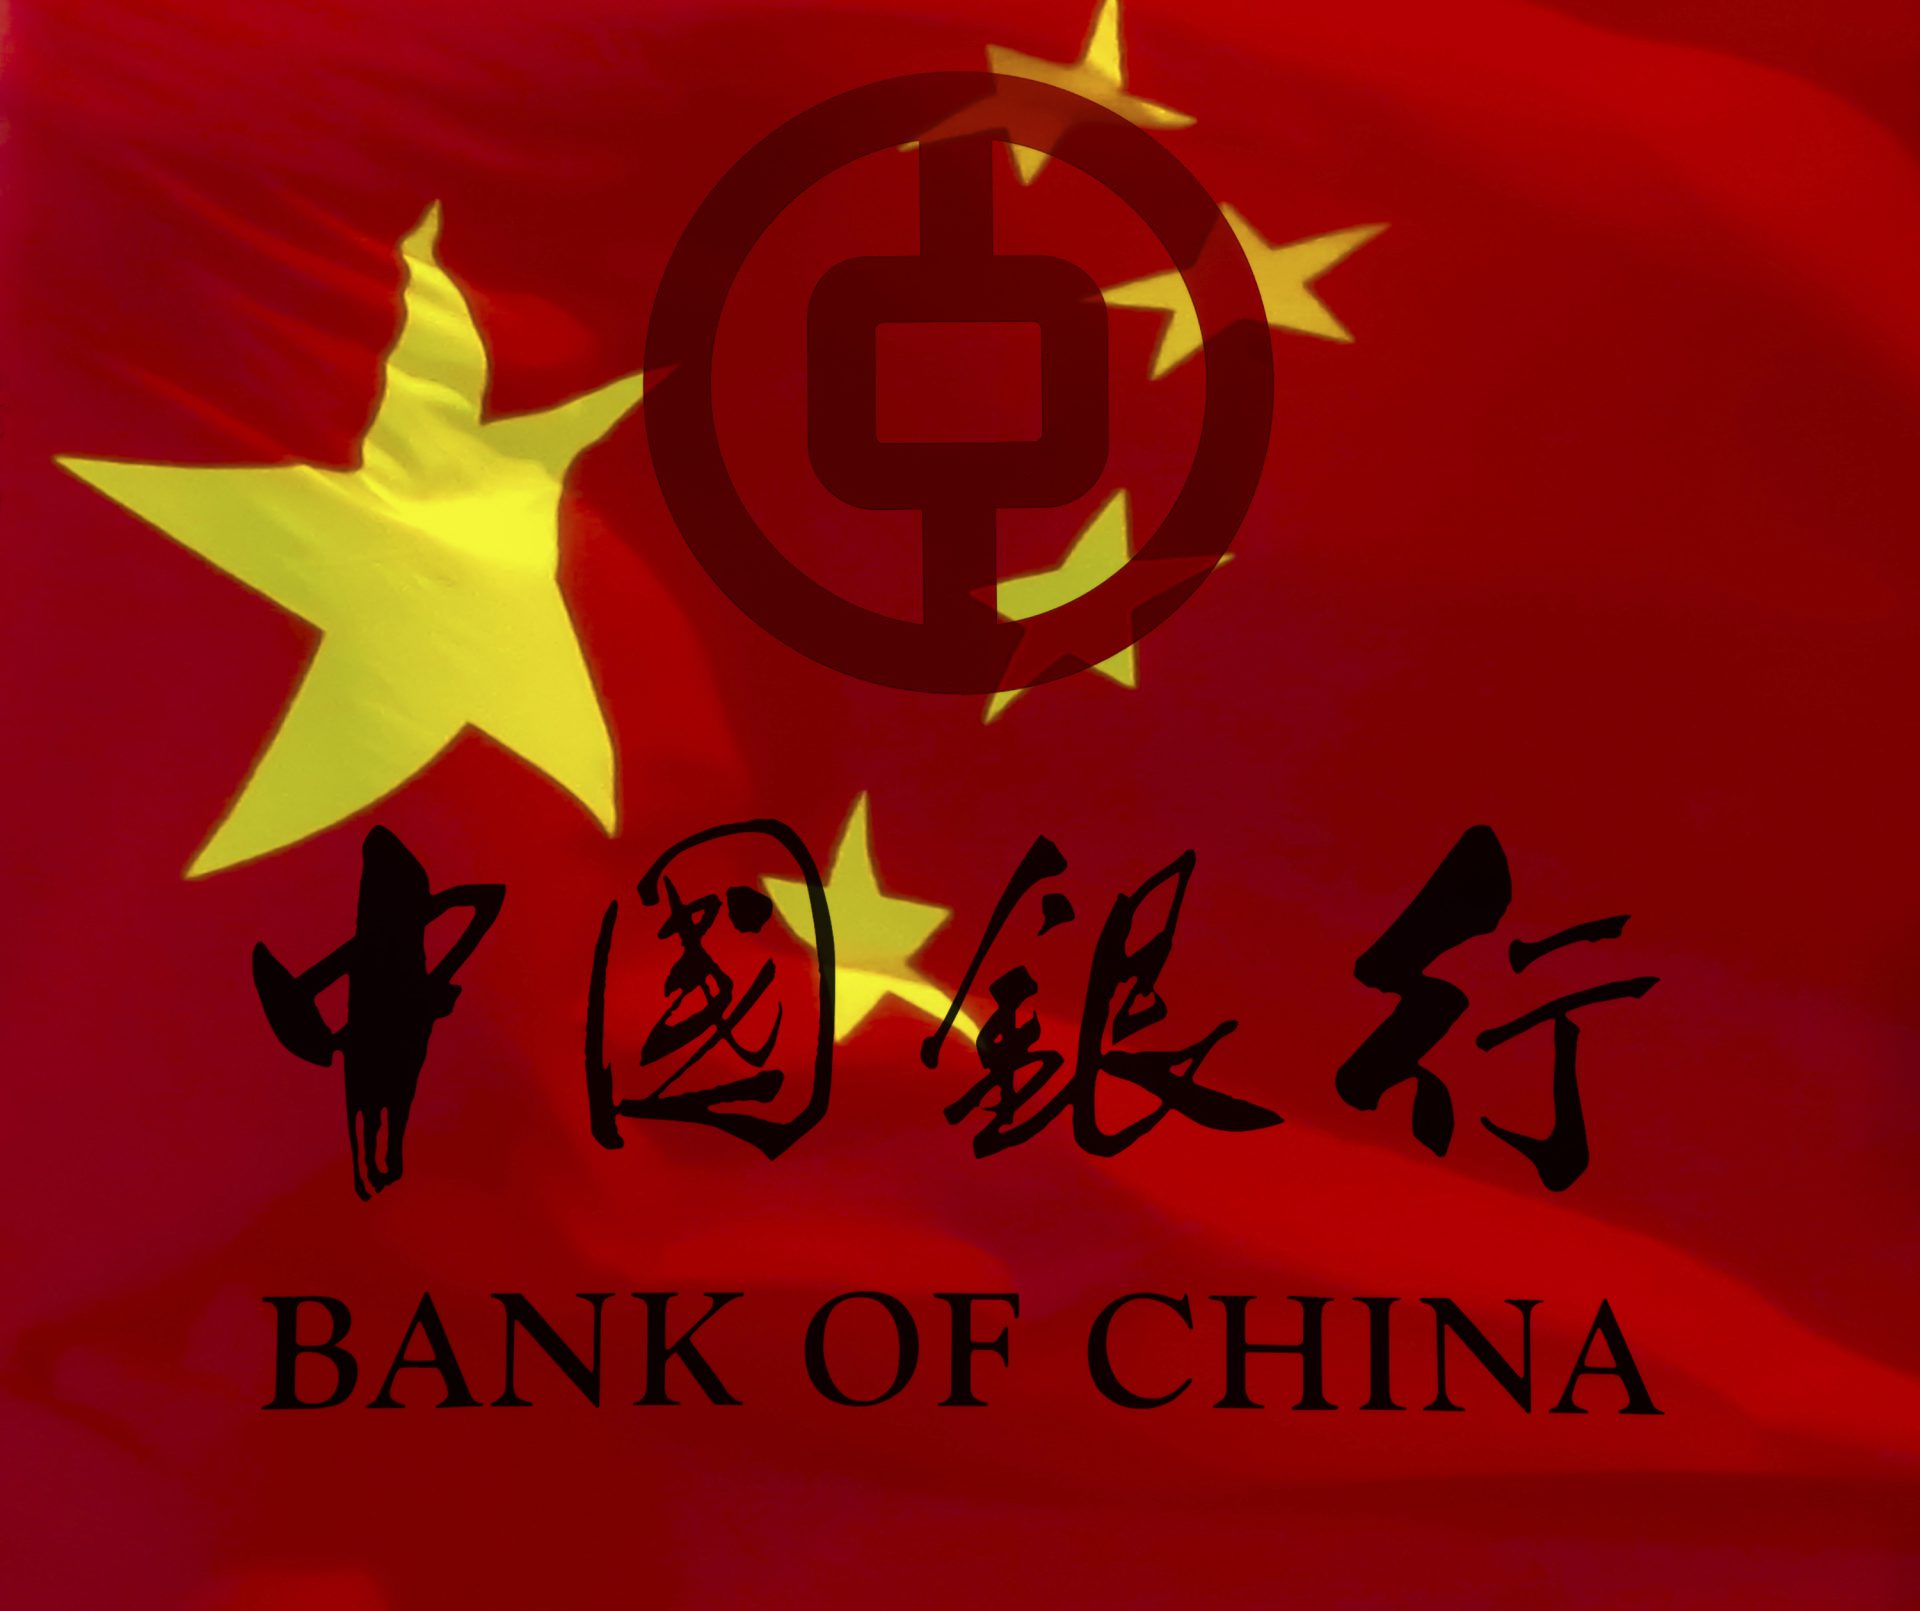 Bank of China sign